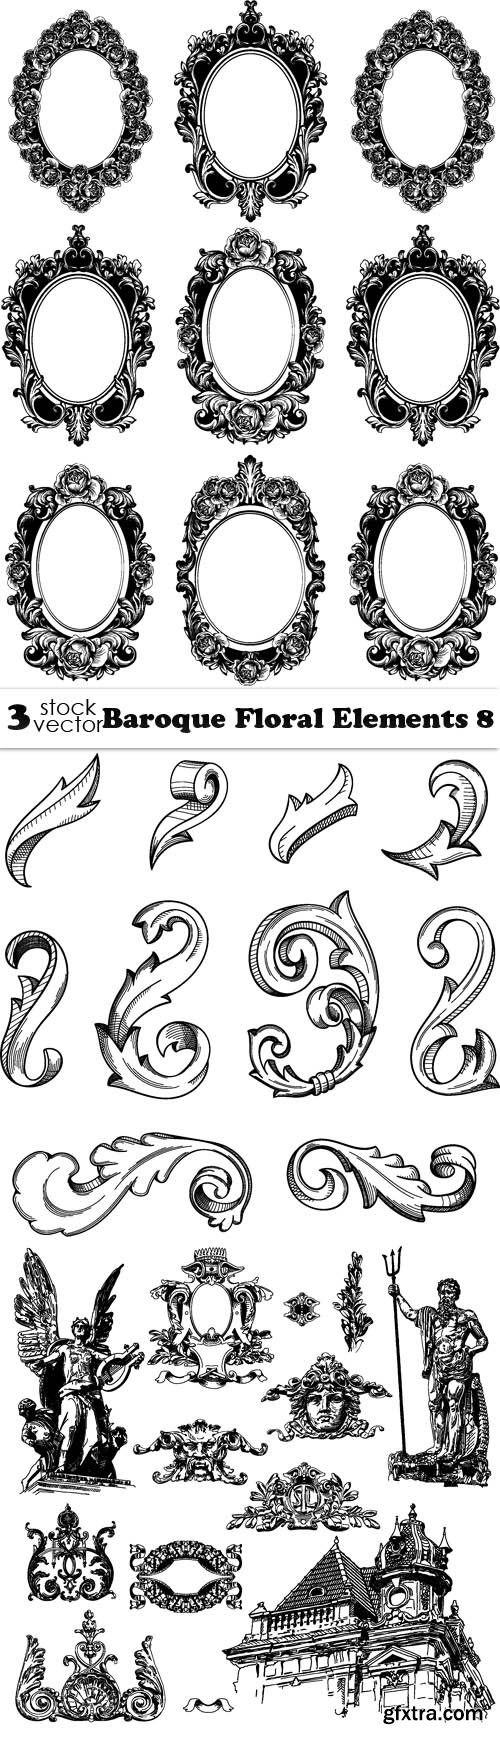 Vectors - Baroque Floral Elements 8